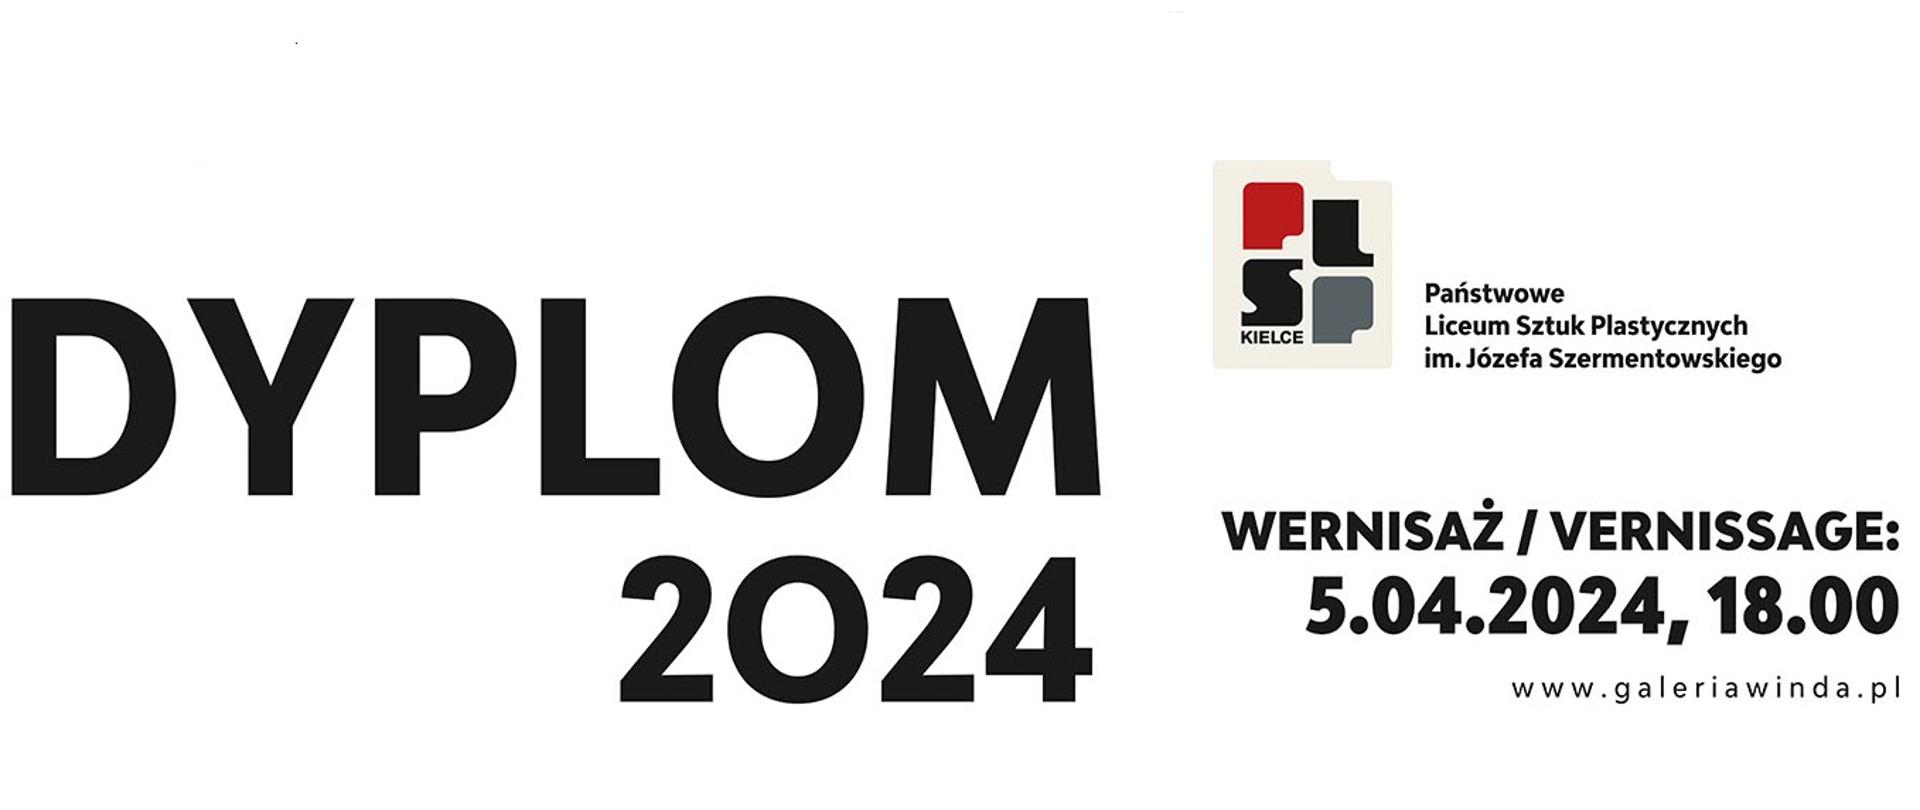 napis w kolorze czarnym, który brzmi: DYPLOM 2024 wernisaż 5.04.2024, 18.00, jest też logo kieleckiego plastyka składające się z liter PLSP w kolorze: P - czerwonym, L i S - czarnym i P - szarym